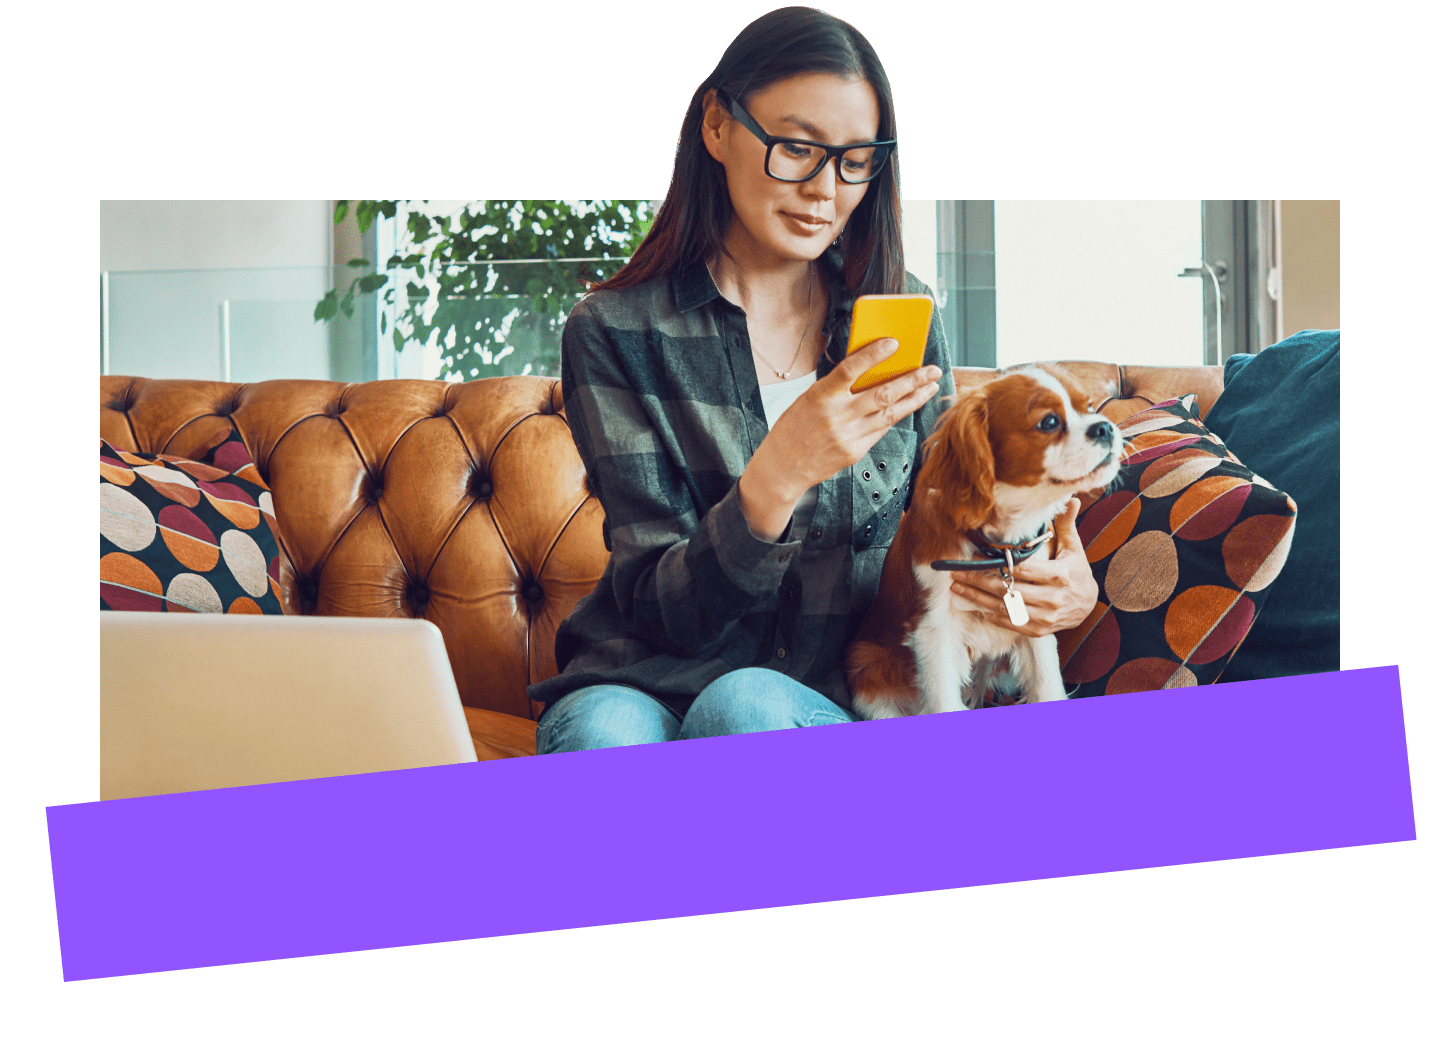 Medewerker op afstand die veilig vanuit thuis werkt via een mobiel apparaat met een hond naast zich.